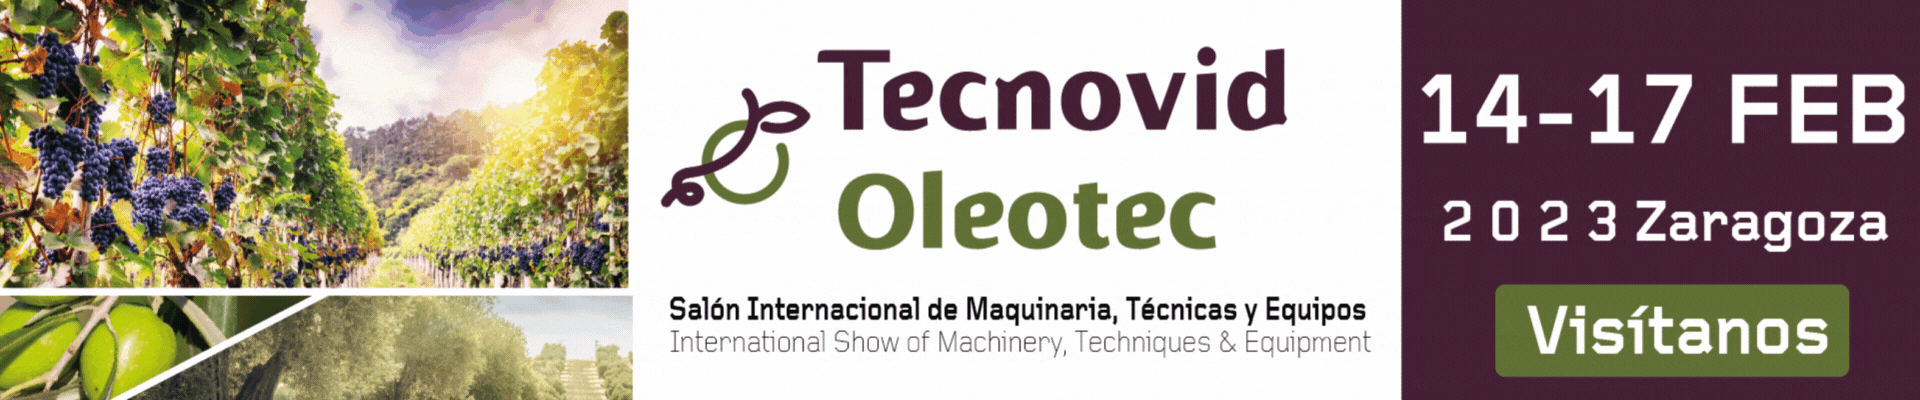 Banner Tecnovid Oleotec 2023